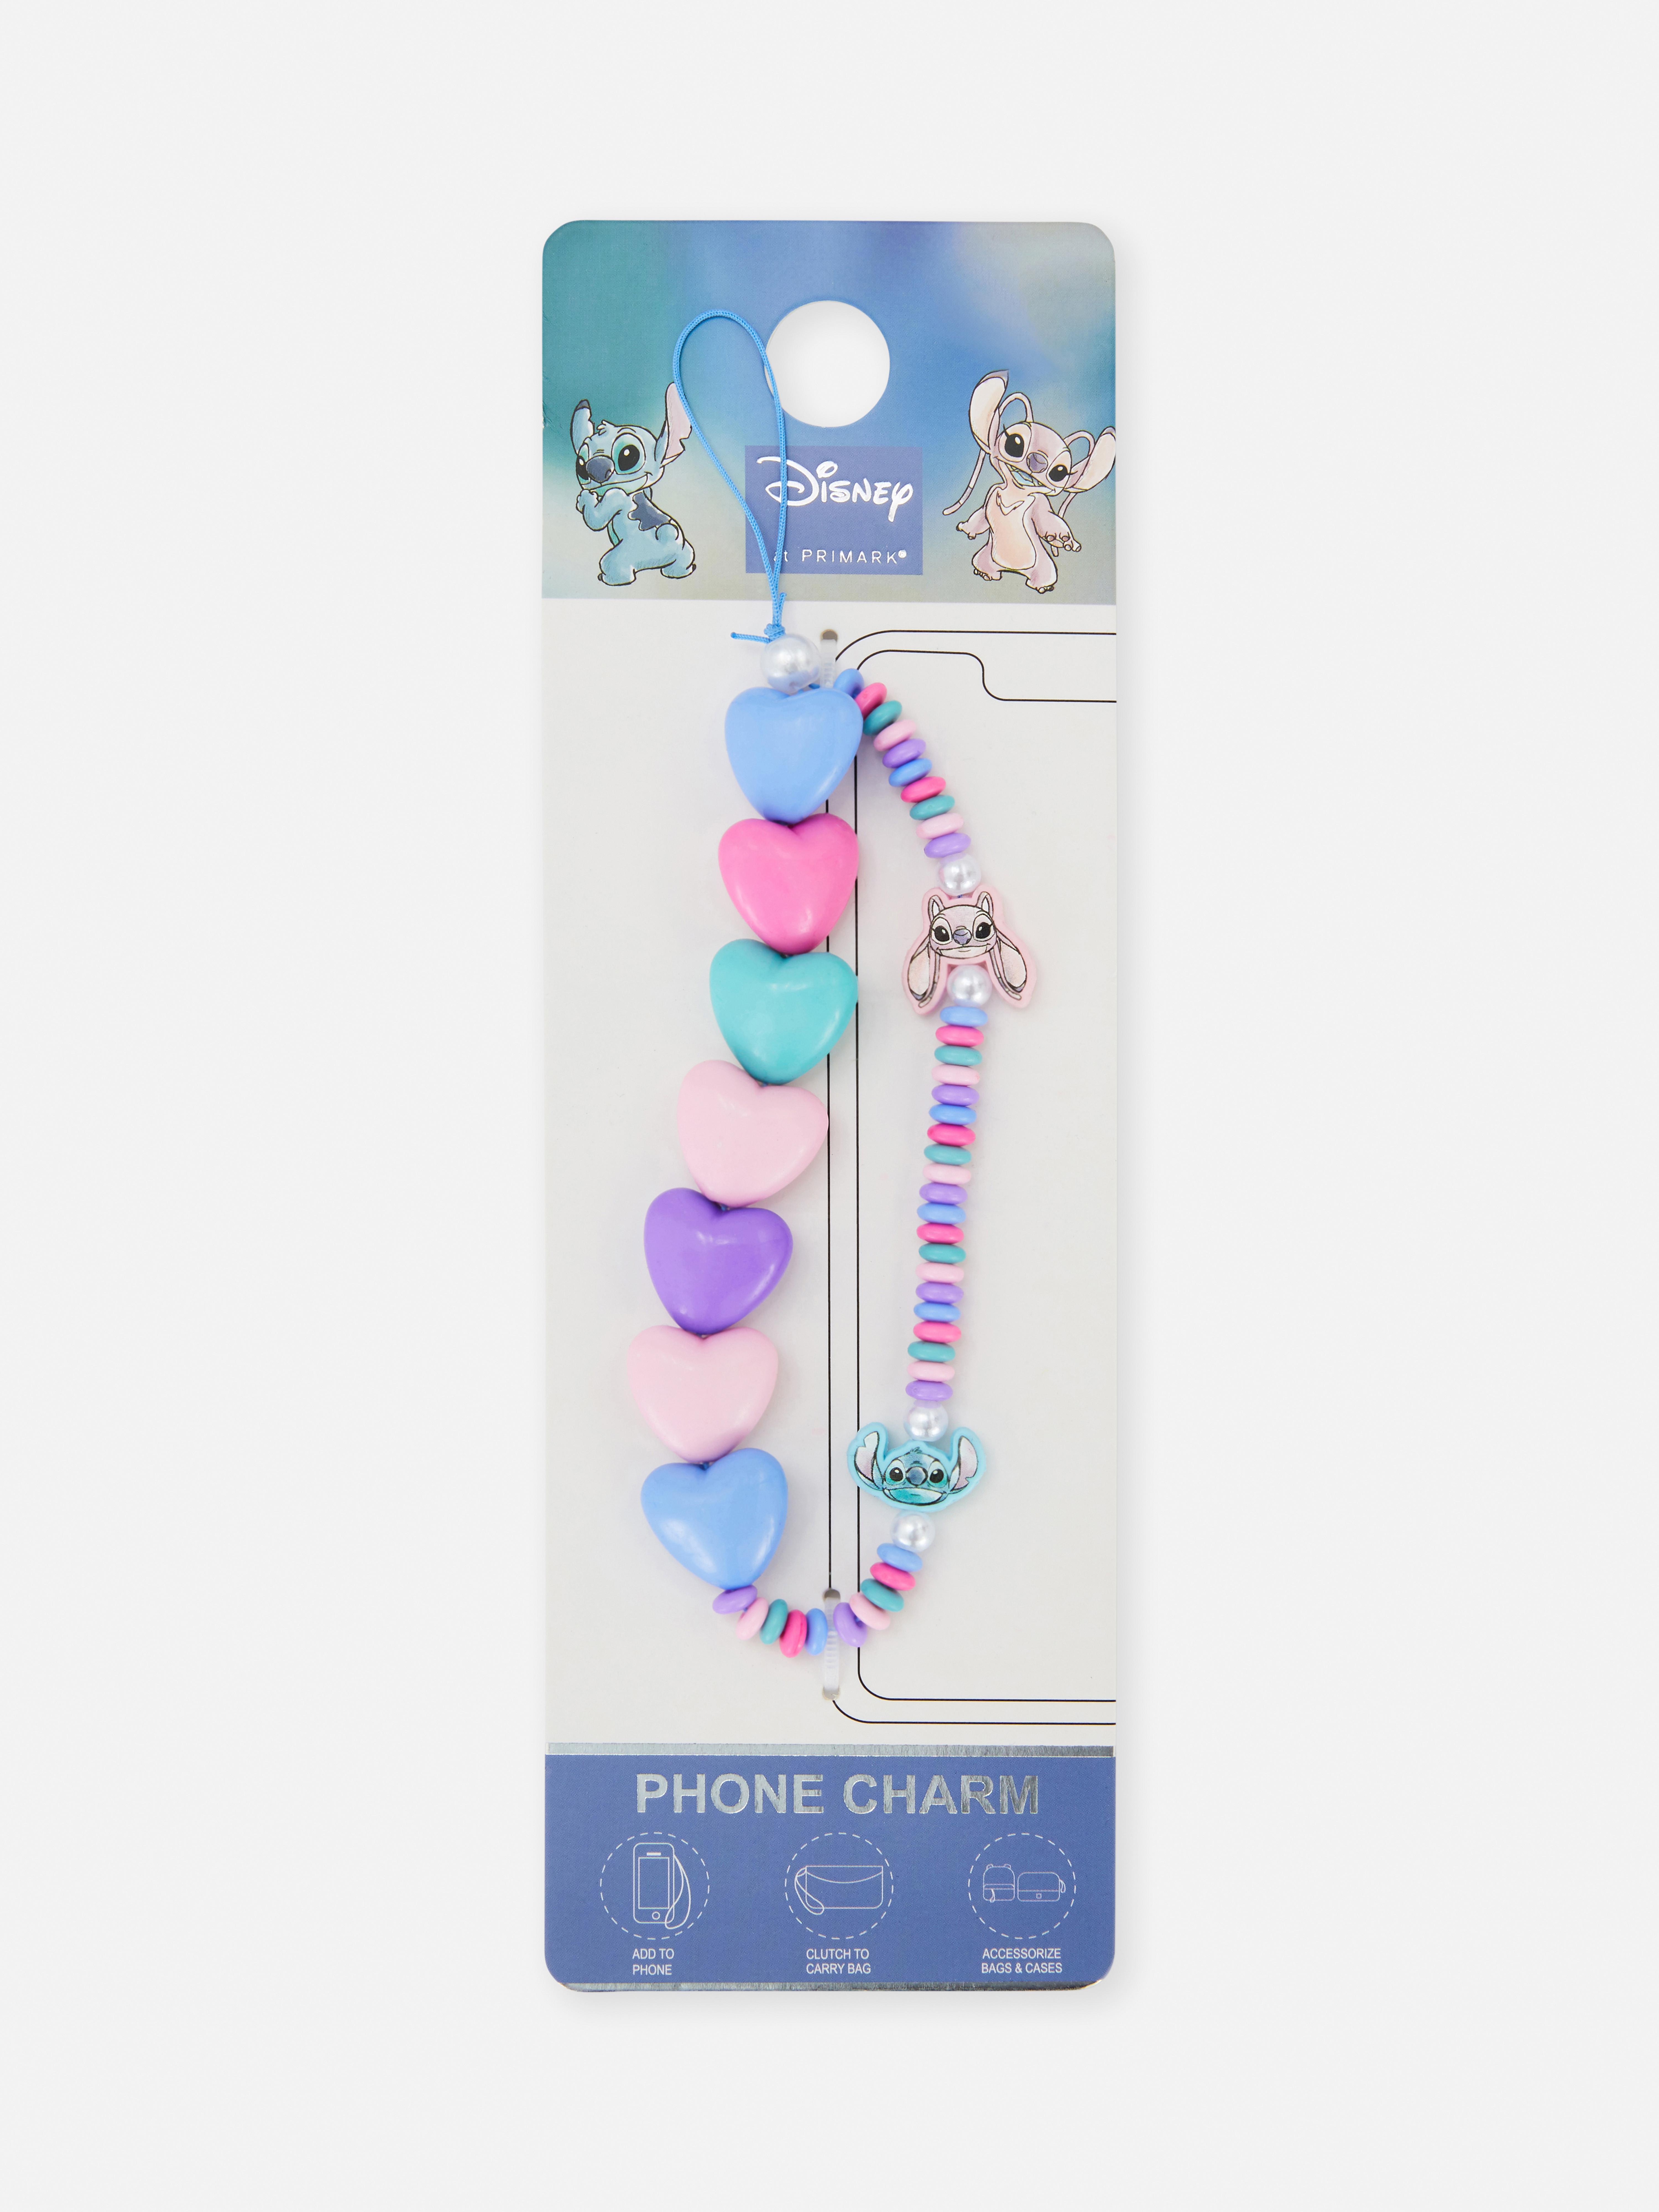 Disney’s Lilo & Stitch Phone Charm